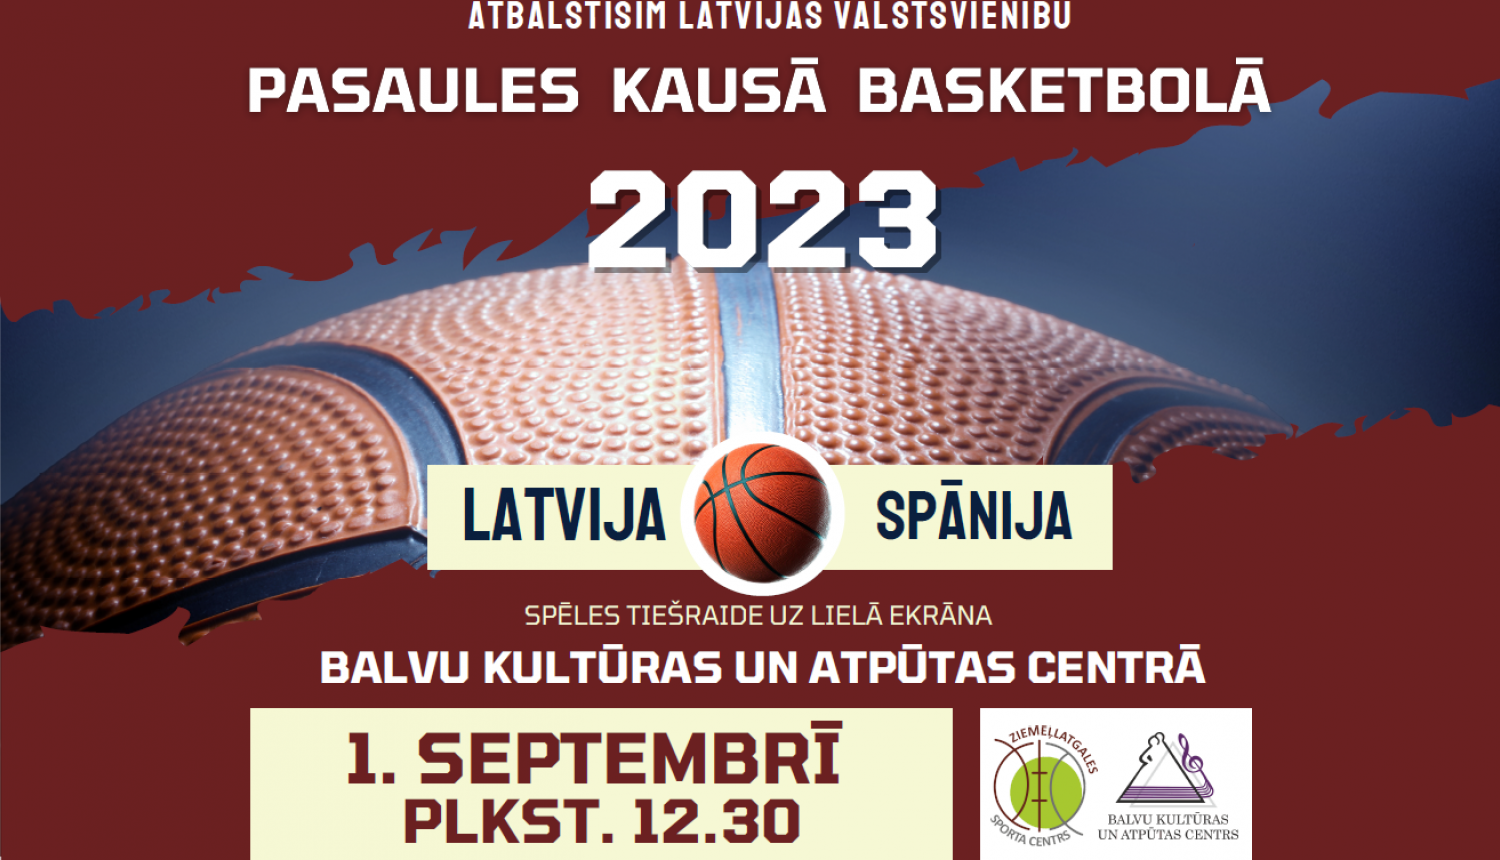 ​ 1. septembrī plkst. 12.30 Balvu Kultūras un atpūtas centrā aicinām skatīties spēles LatvijaSpānija tiešraidi uz lielā ekrāna  ​